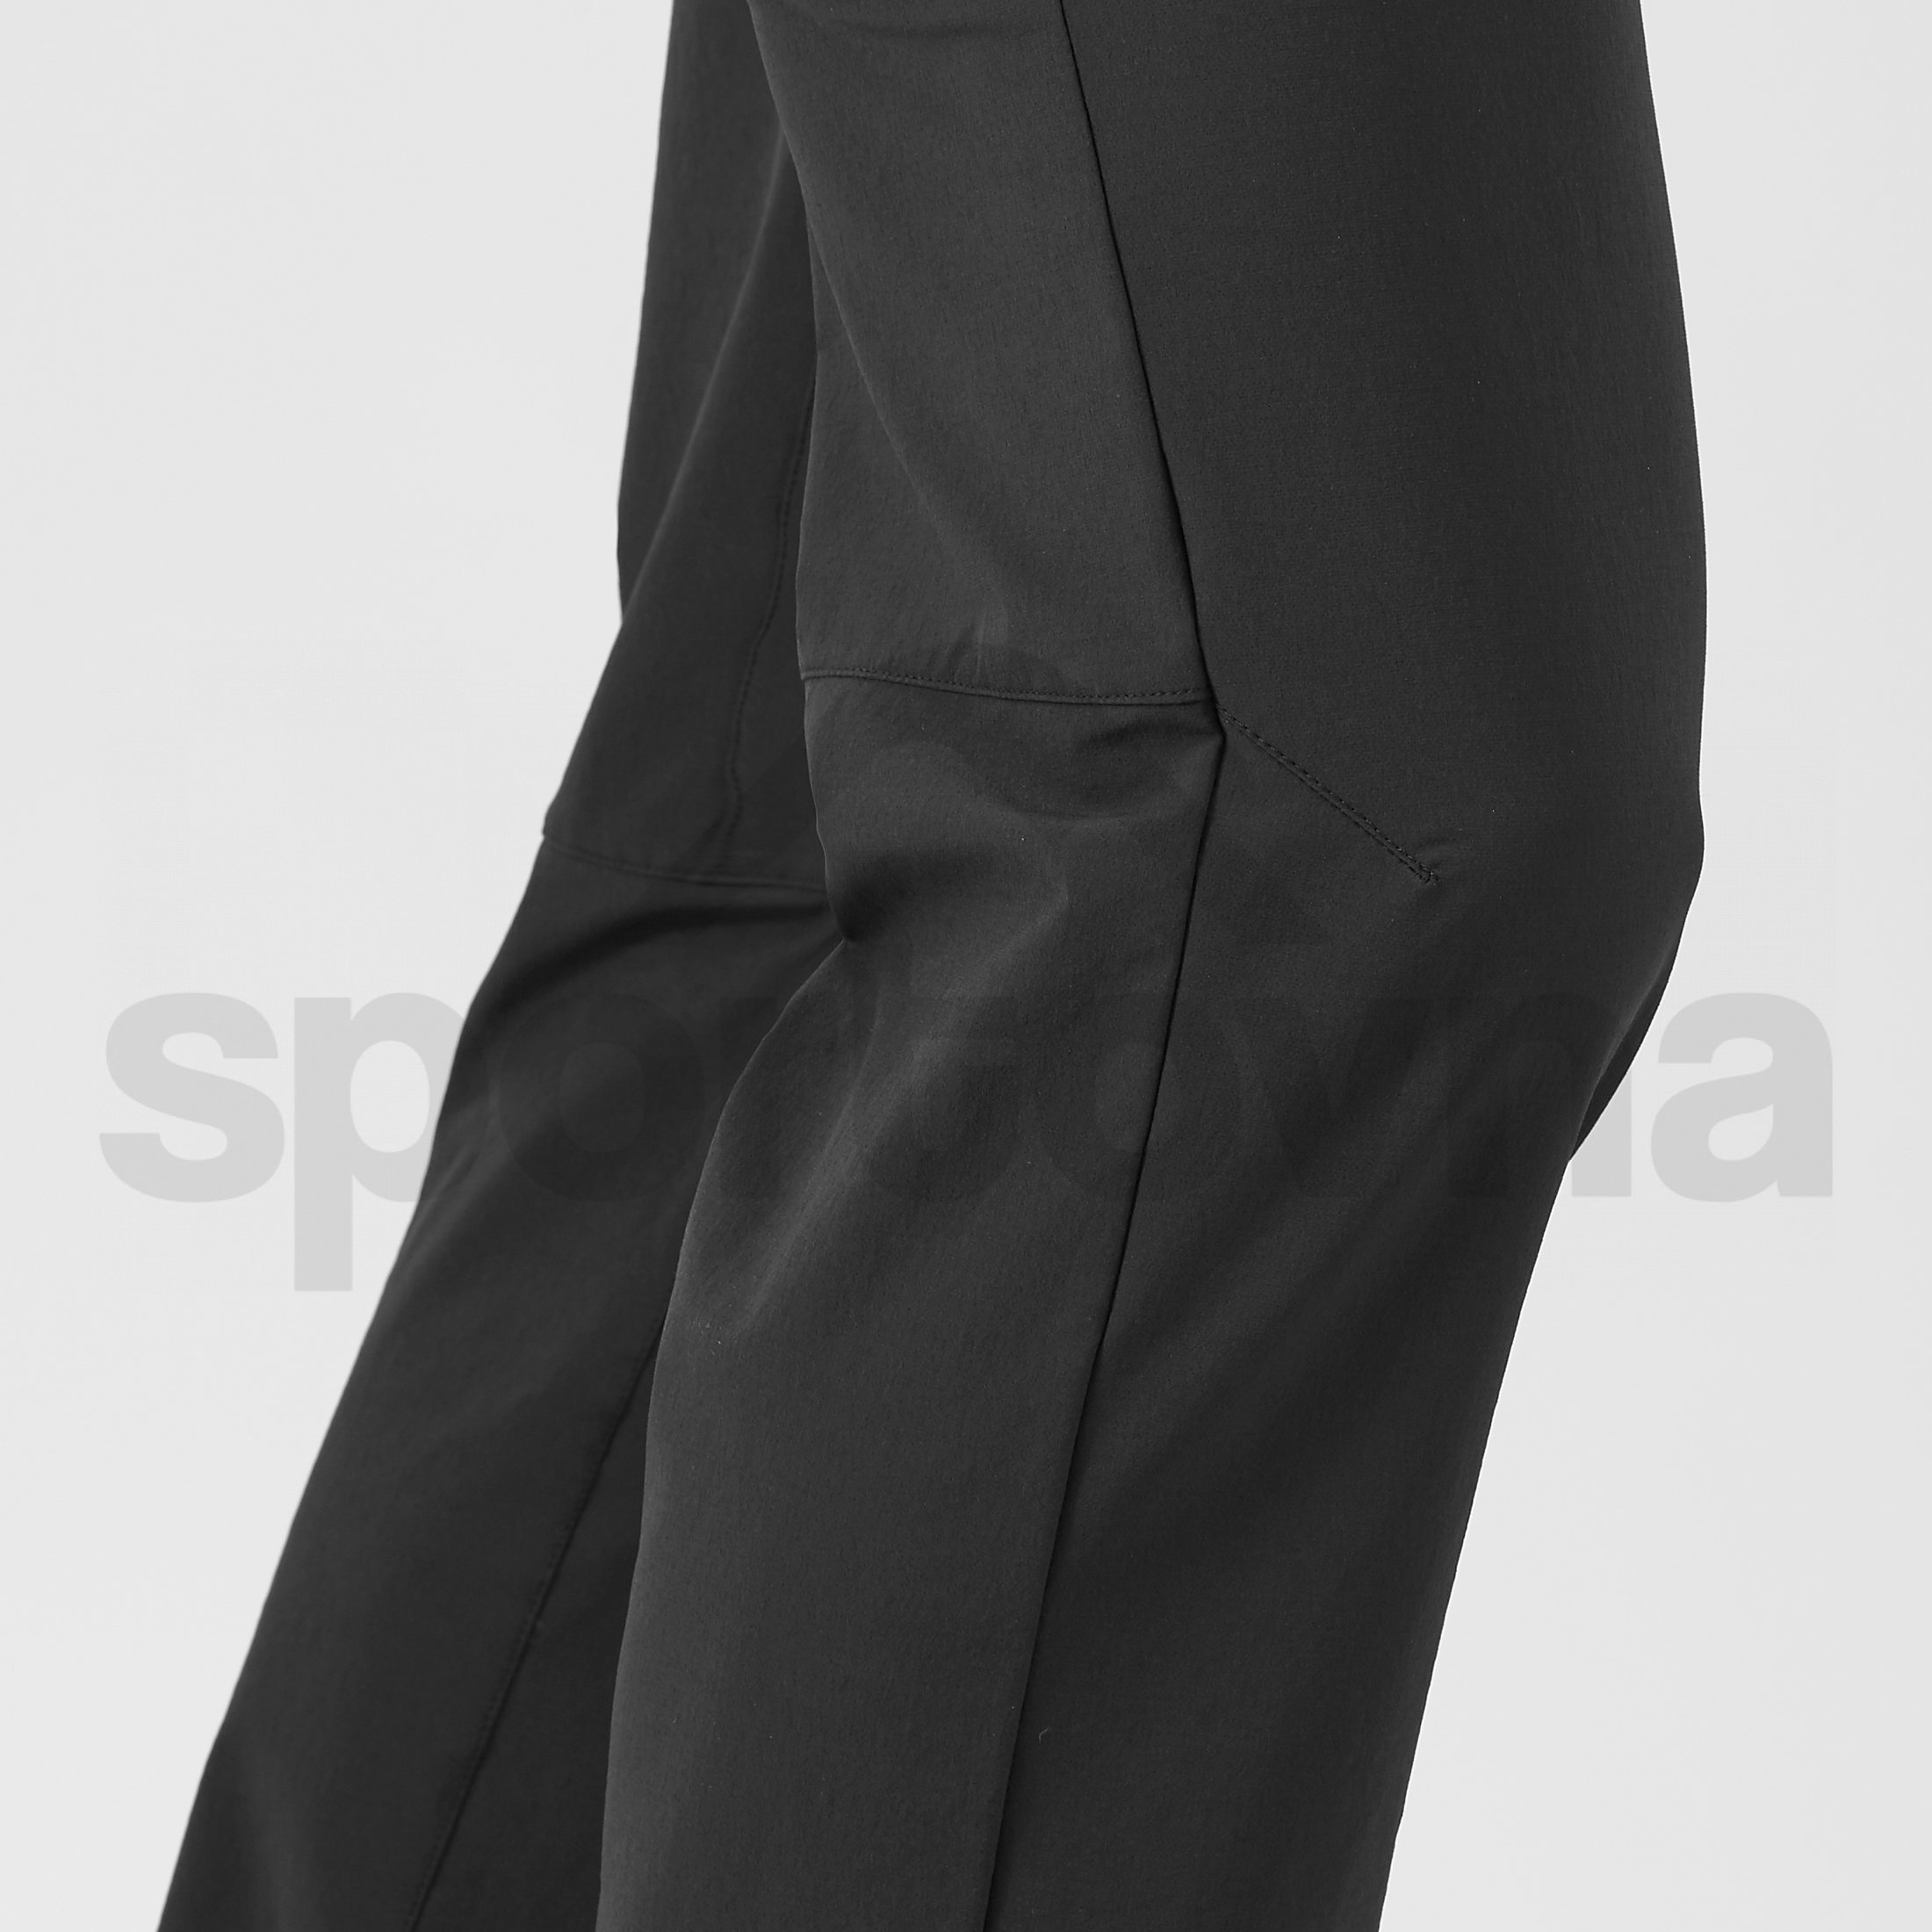 Kalhoty Salomon Wayfarer Straight Pant M - černá (zkrácená délka)